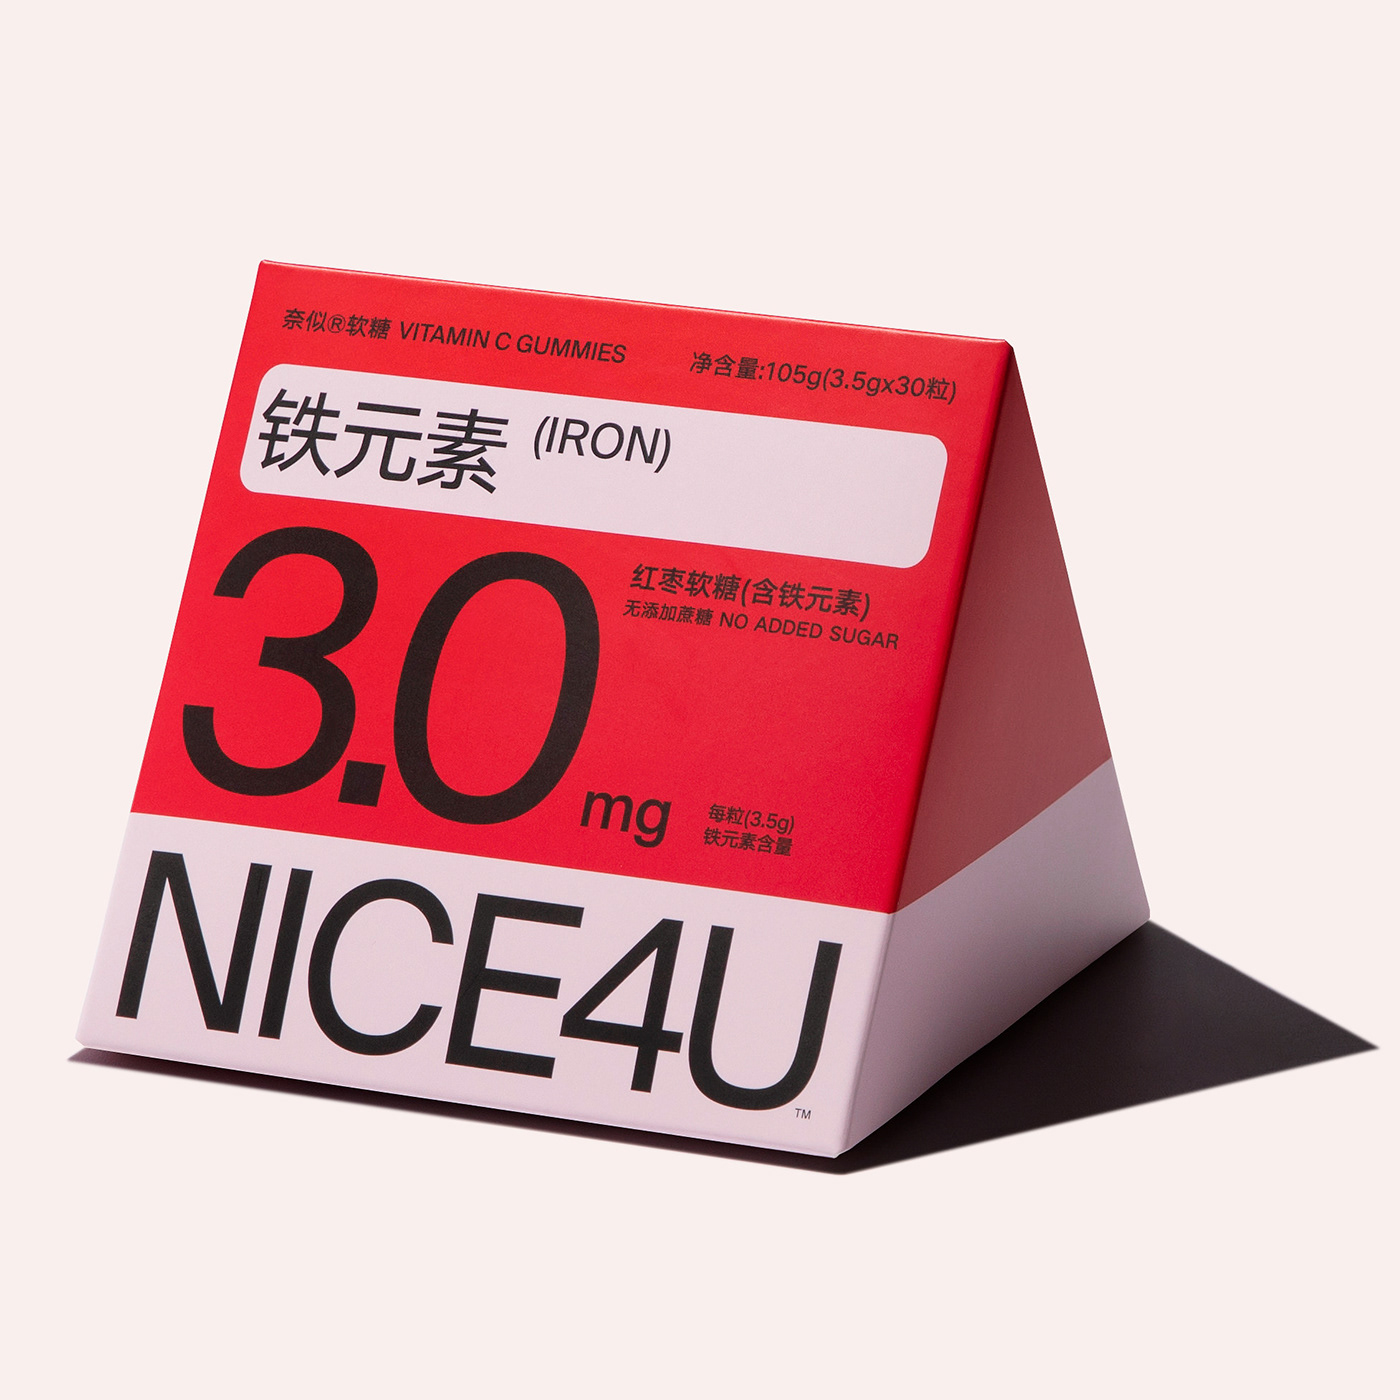 NICE4U软糖包装设计